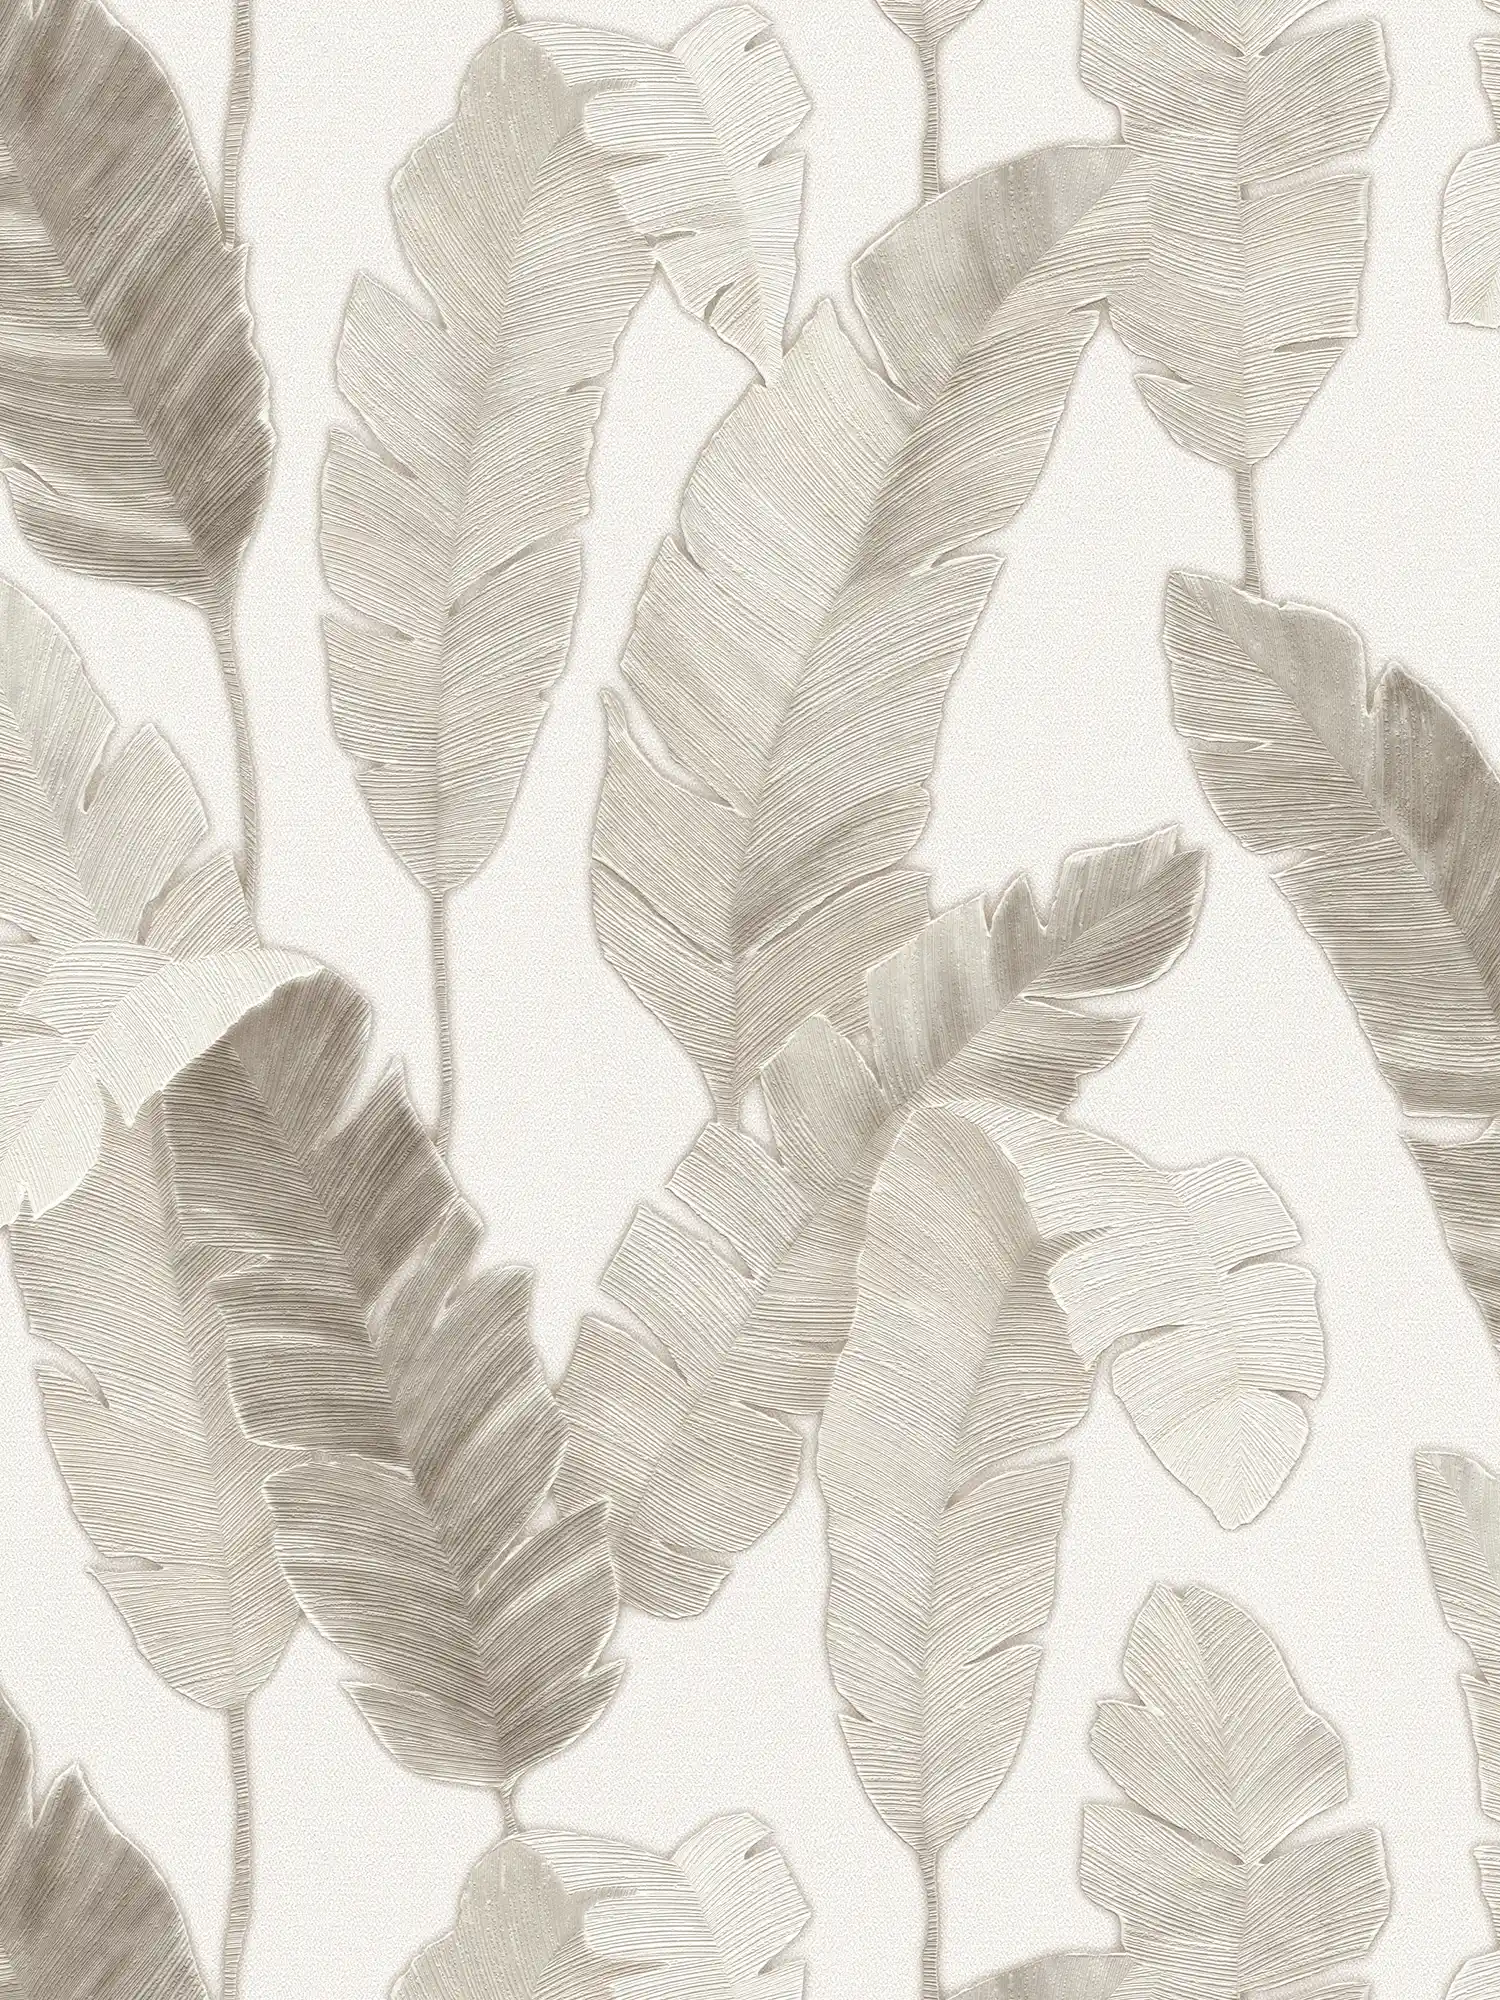 Papier peint intissé avec feuilles de palmier discrètes - blanc, beige, gris
